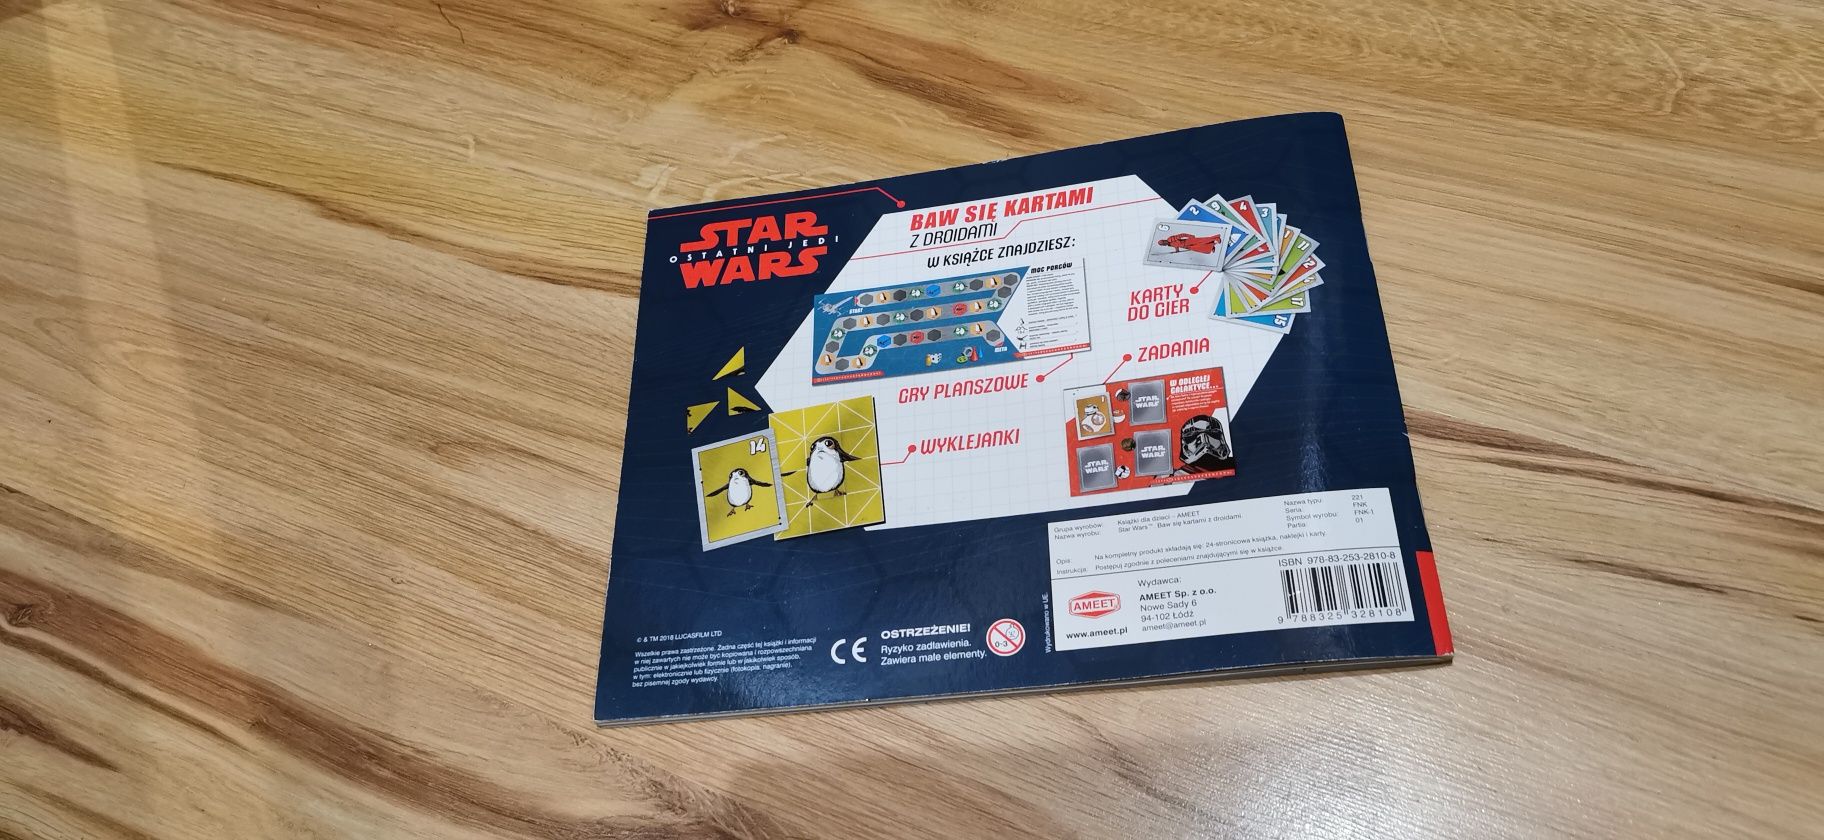 Nowa Star Wars książka z kartami, grami, wyklejankami